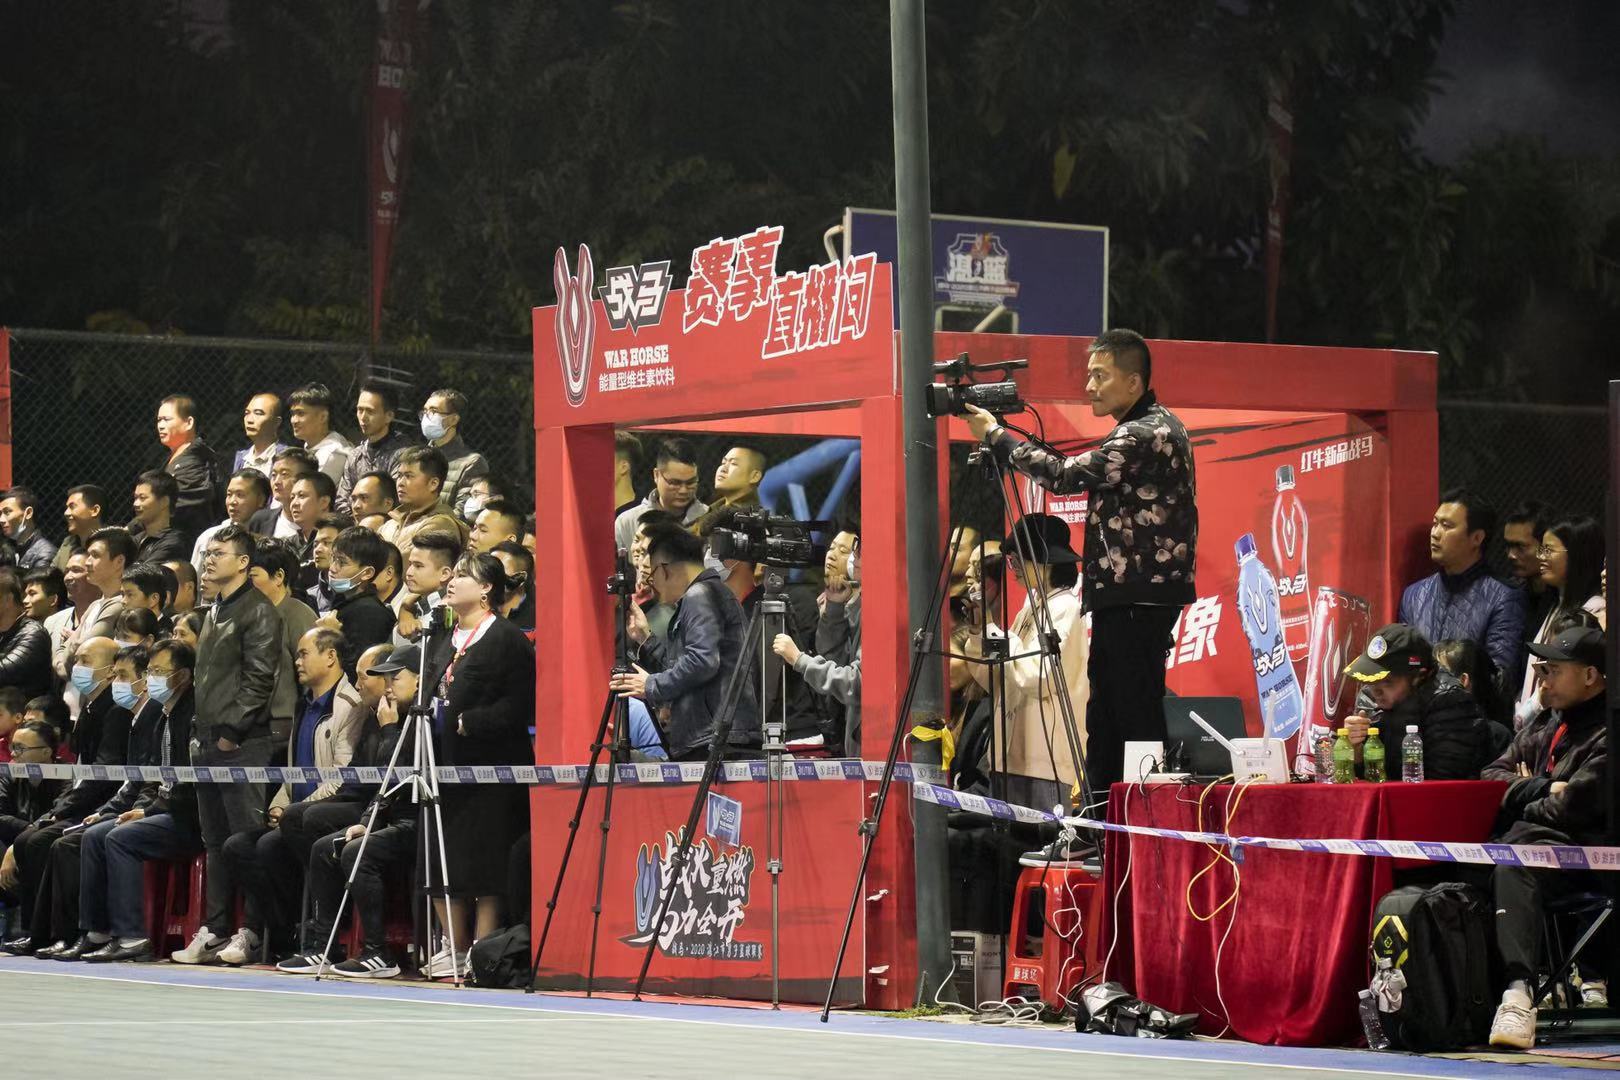 战马•2020湛江市男子篮球联赛总决赛今日打响